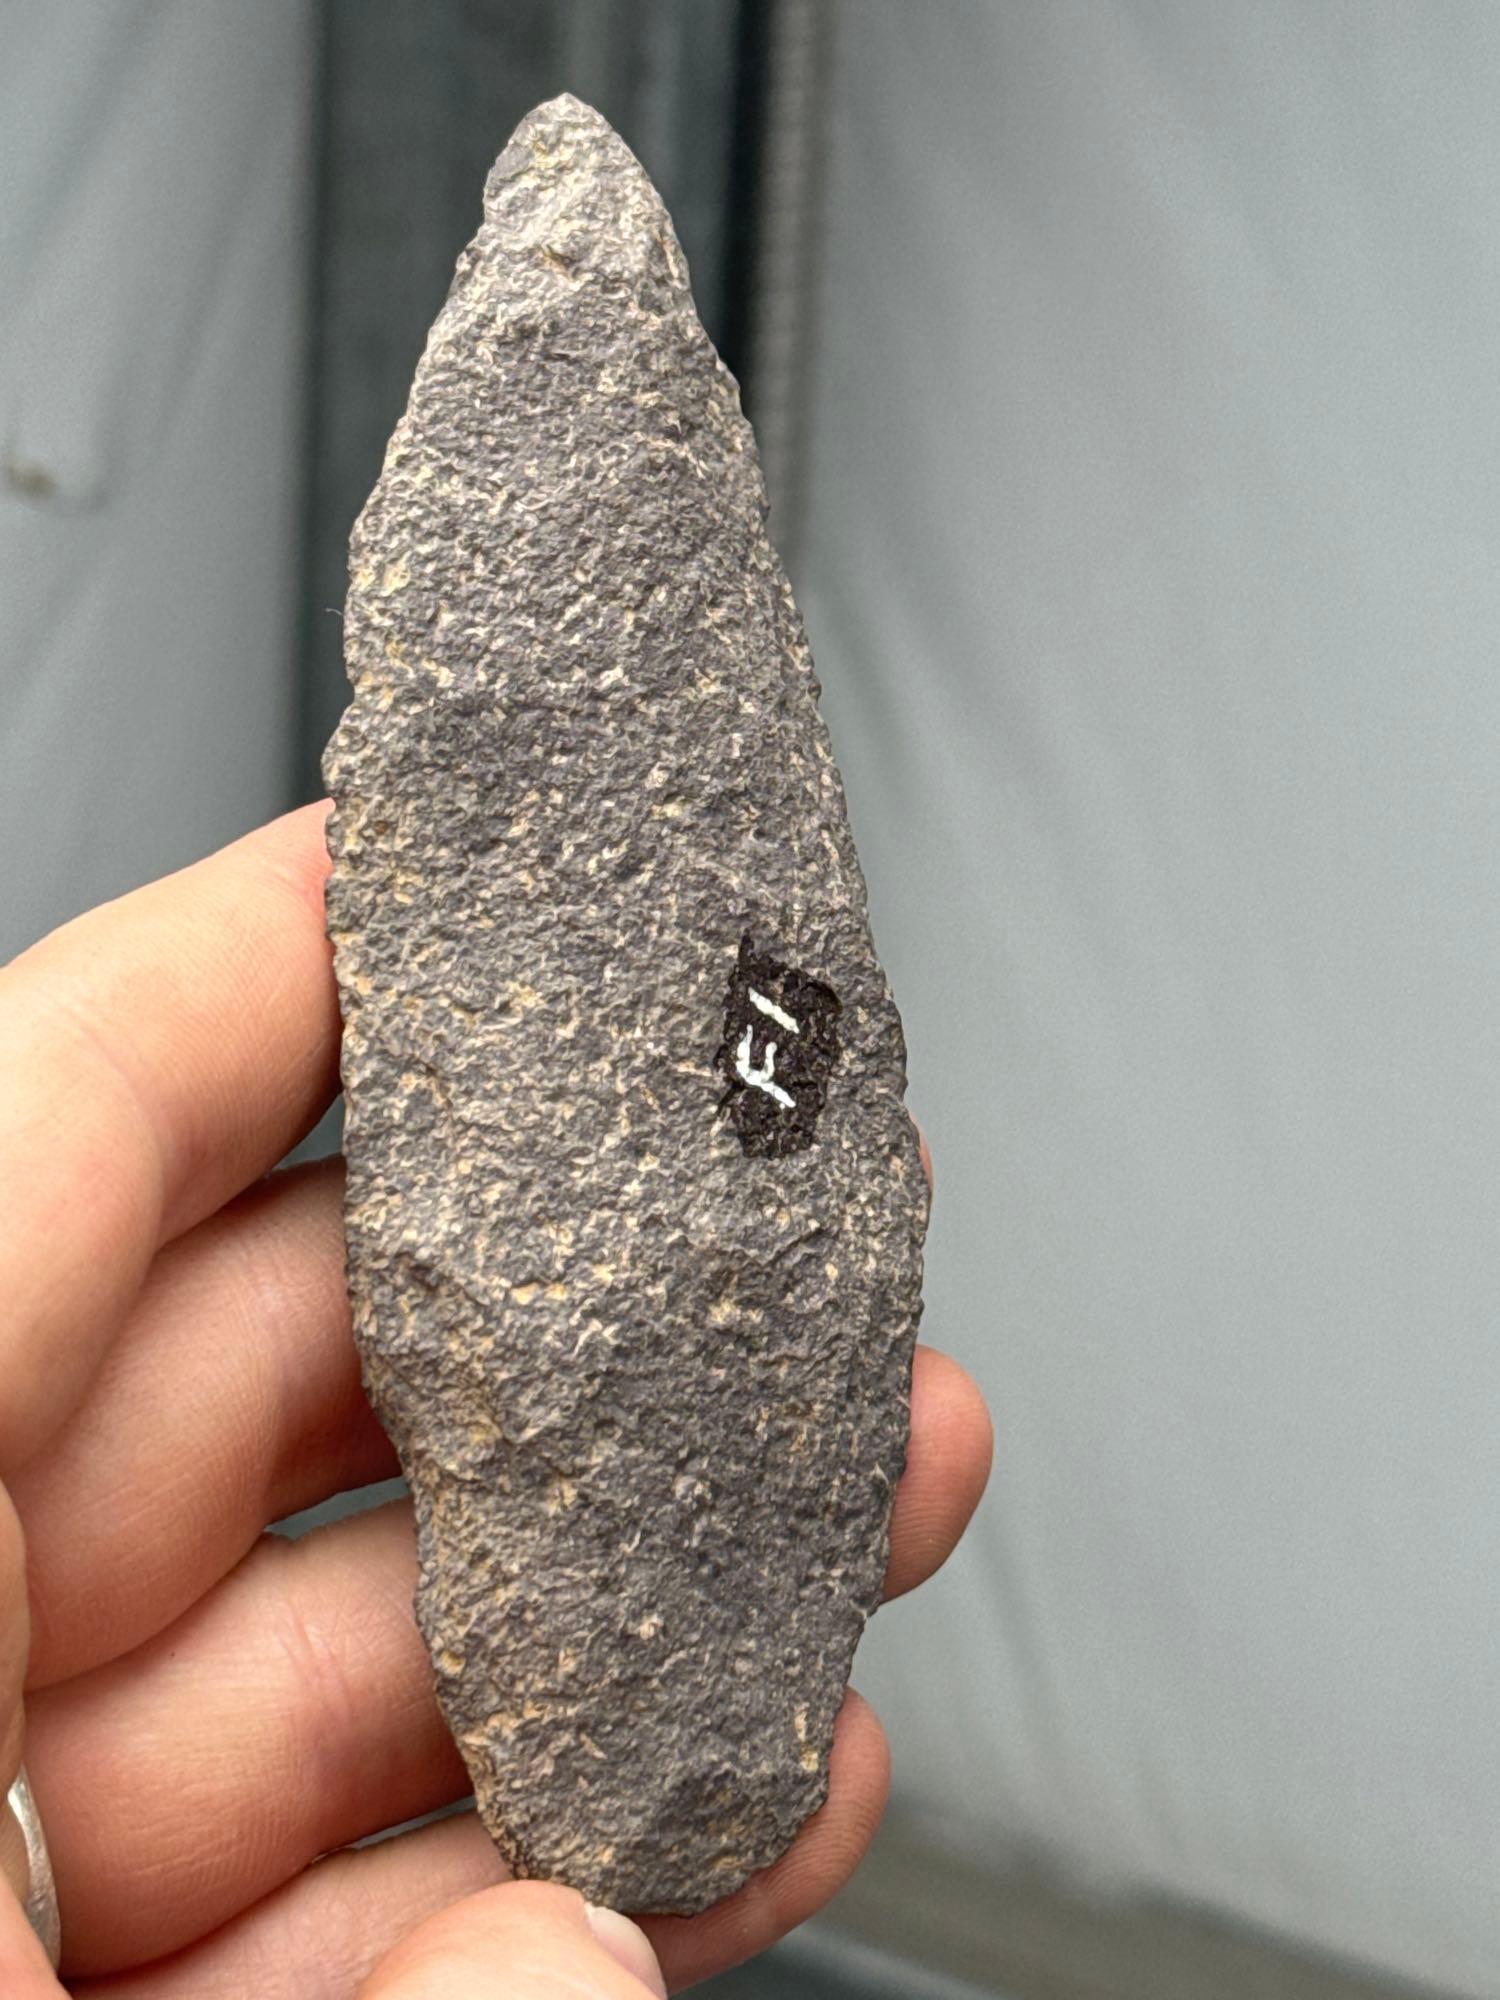 4 1/2" Argillite Blade, Found in New Jersey, Ex: Dayton Staats Collection